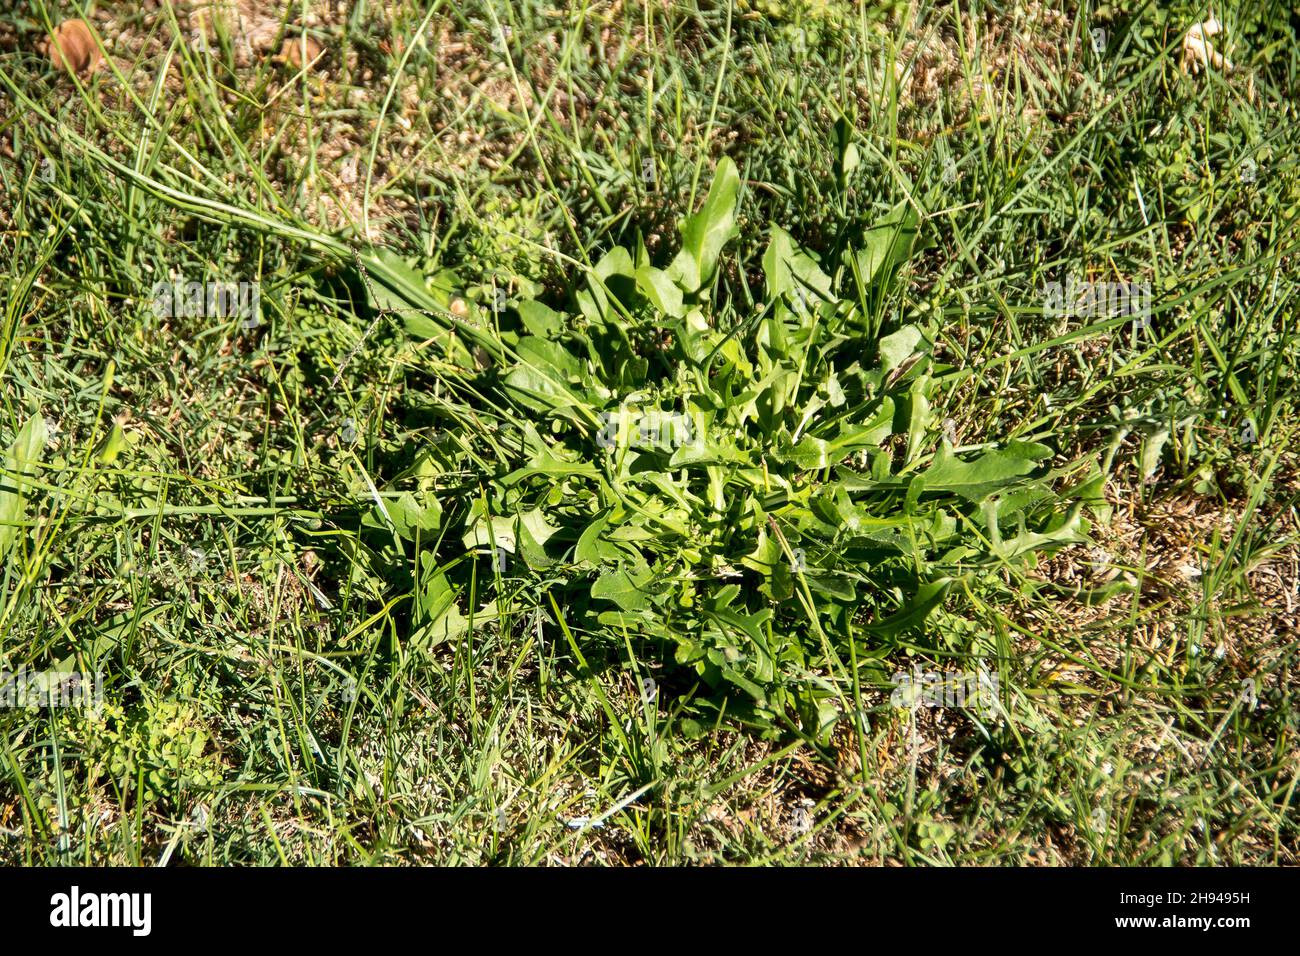 Blätter von Katzenohrkraut, Hypochaeris radicata, Flachkraut, im Grasland in Queensland, Australien. Fruchtbares Perennielkraut ähnlich wie der Dandelion. Feder. Stockfoto